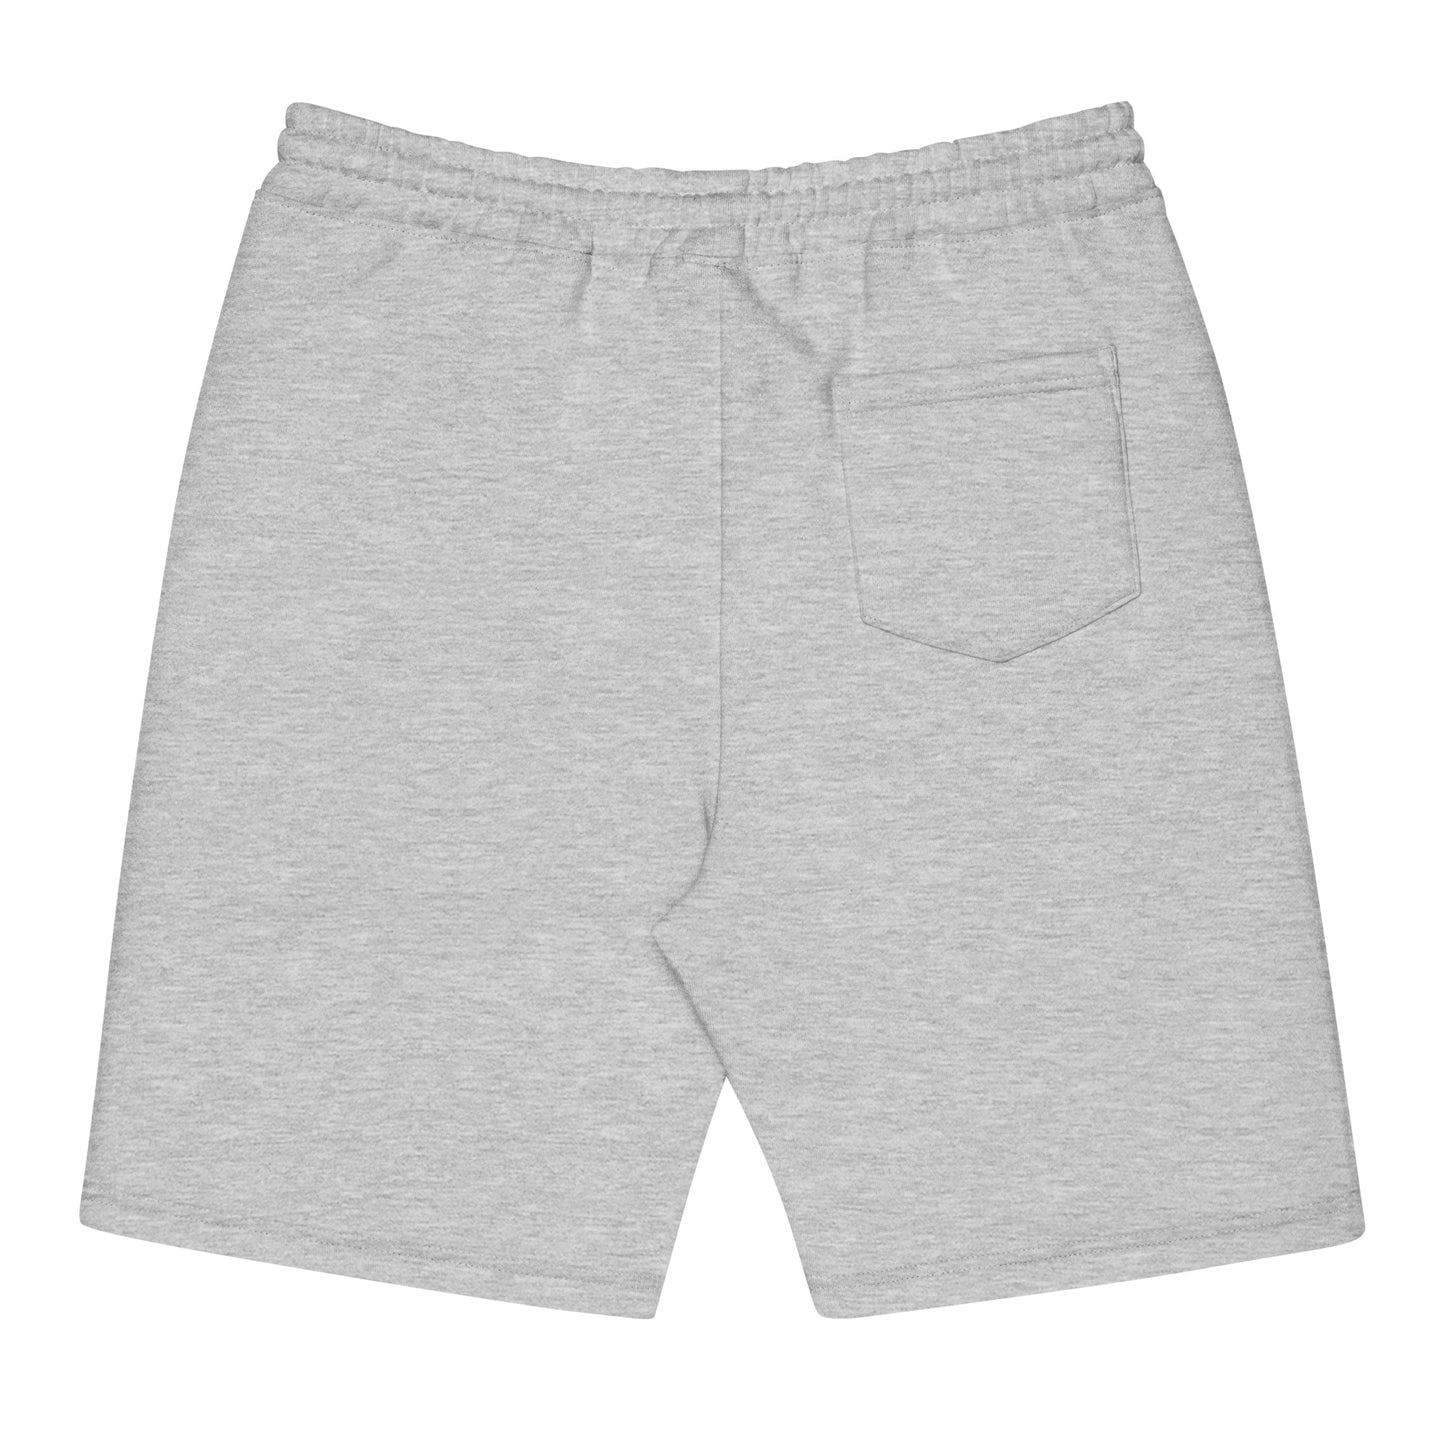 Time Tunnel (v1) Men's fleece shorts